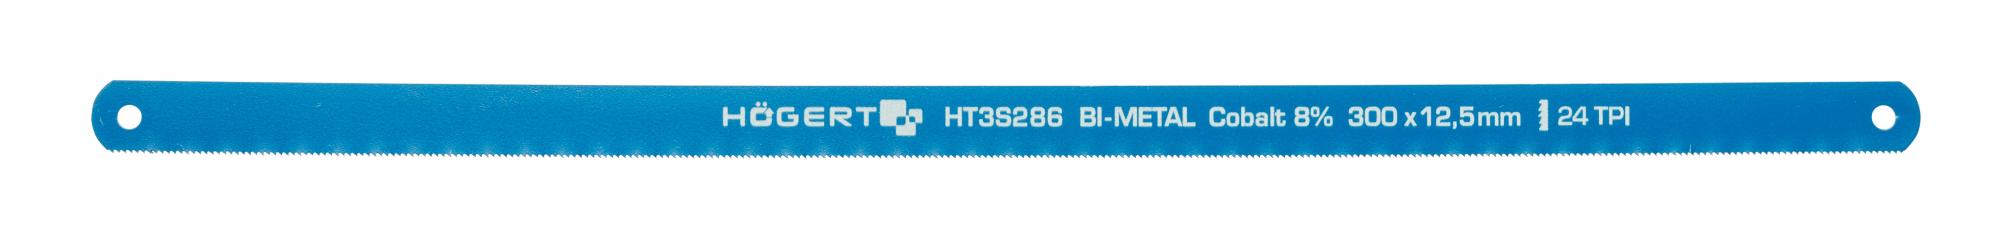 Högert  HT3S286 Полотно по металлу 24 TPI, 12,7 мм, HSS, Bi- металл 300 мм, 2 шт.